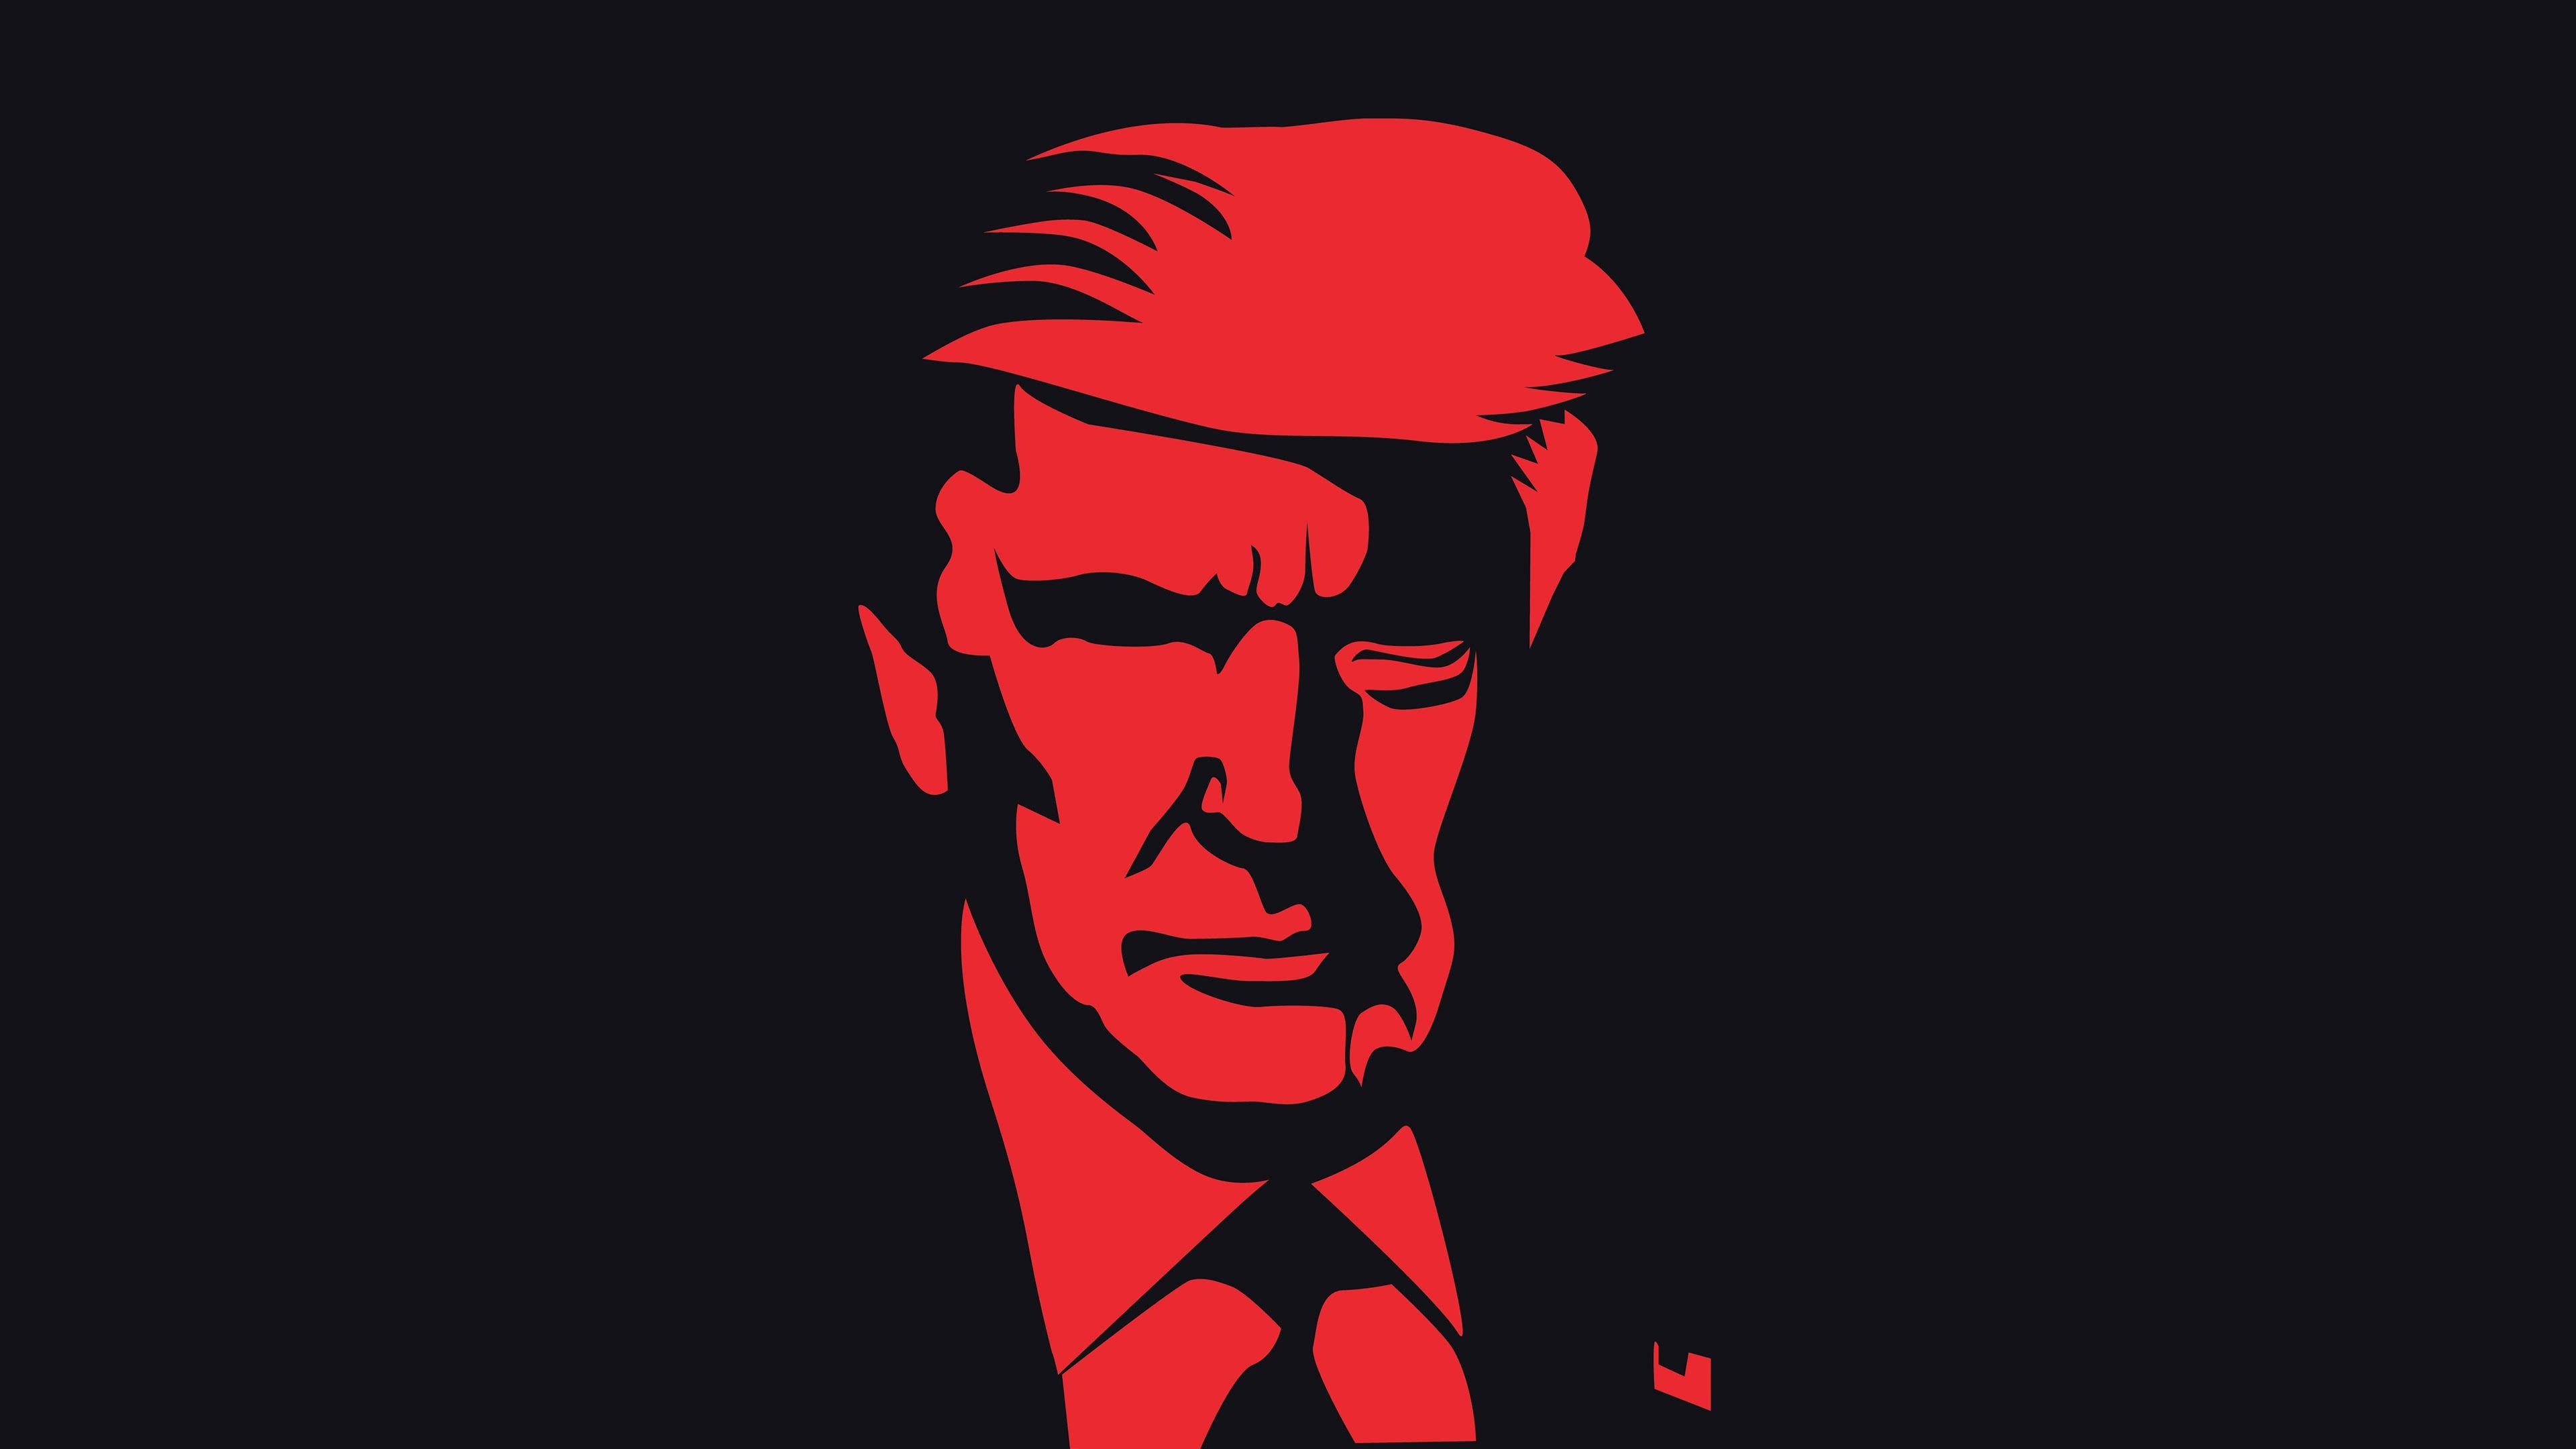 3840x2160 Tác phẩm nghệ thuật chân dung Donald Trump Hình nền UHD 4K